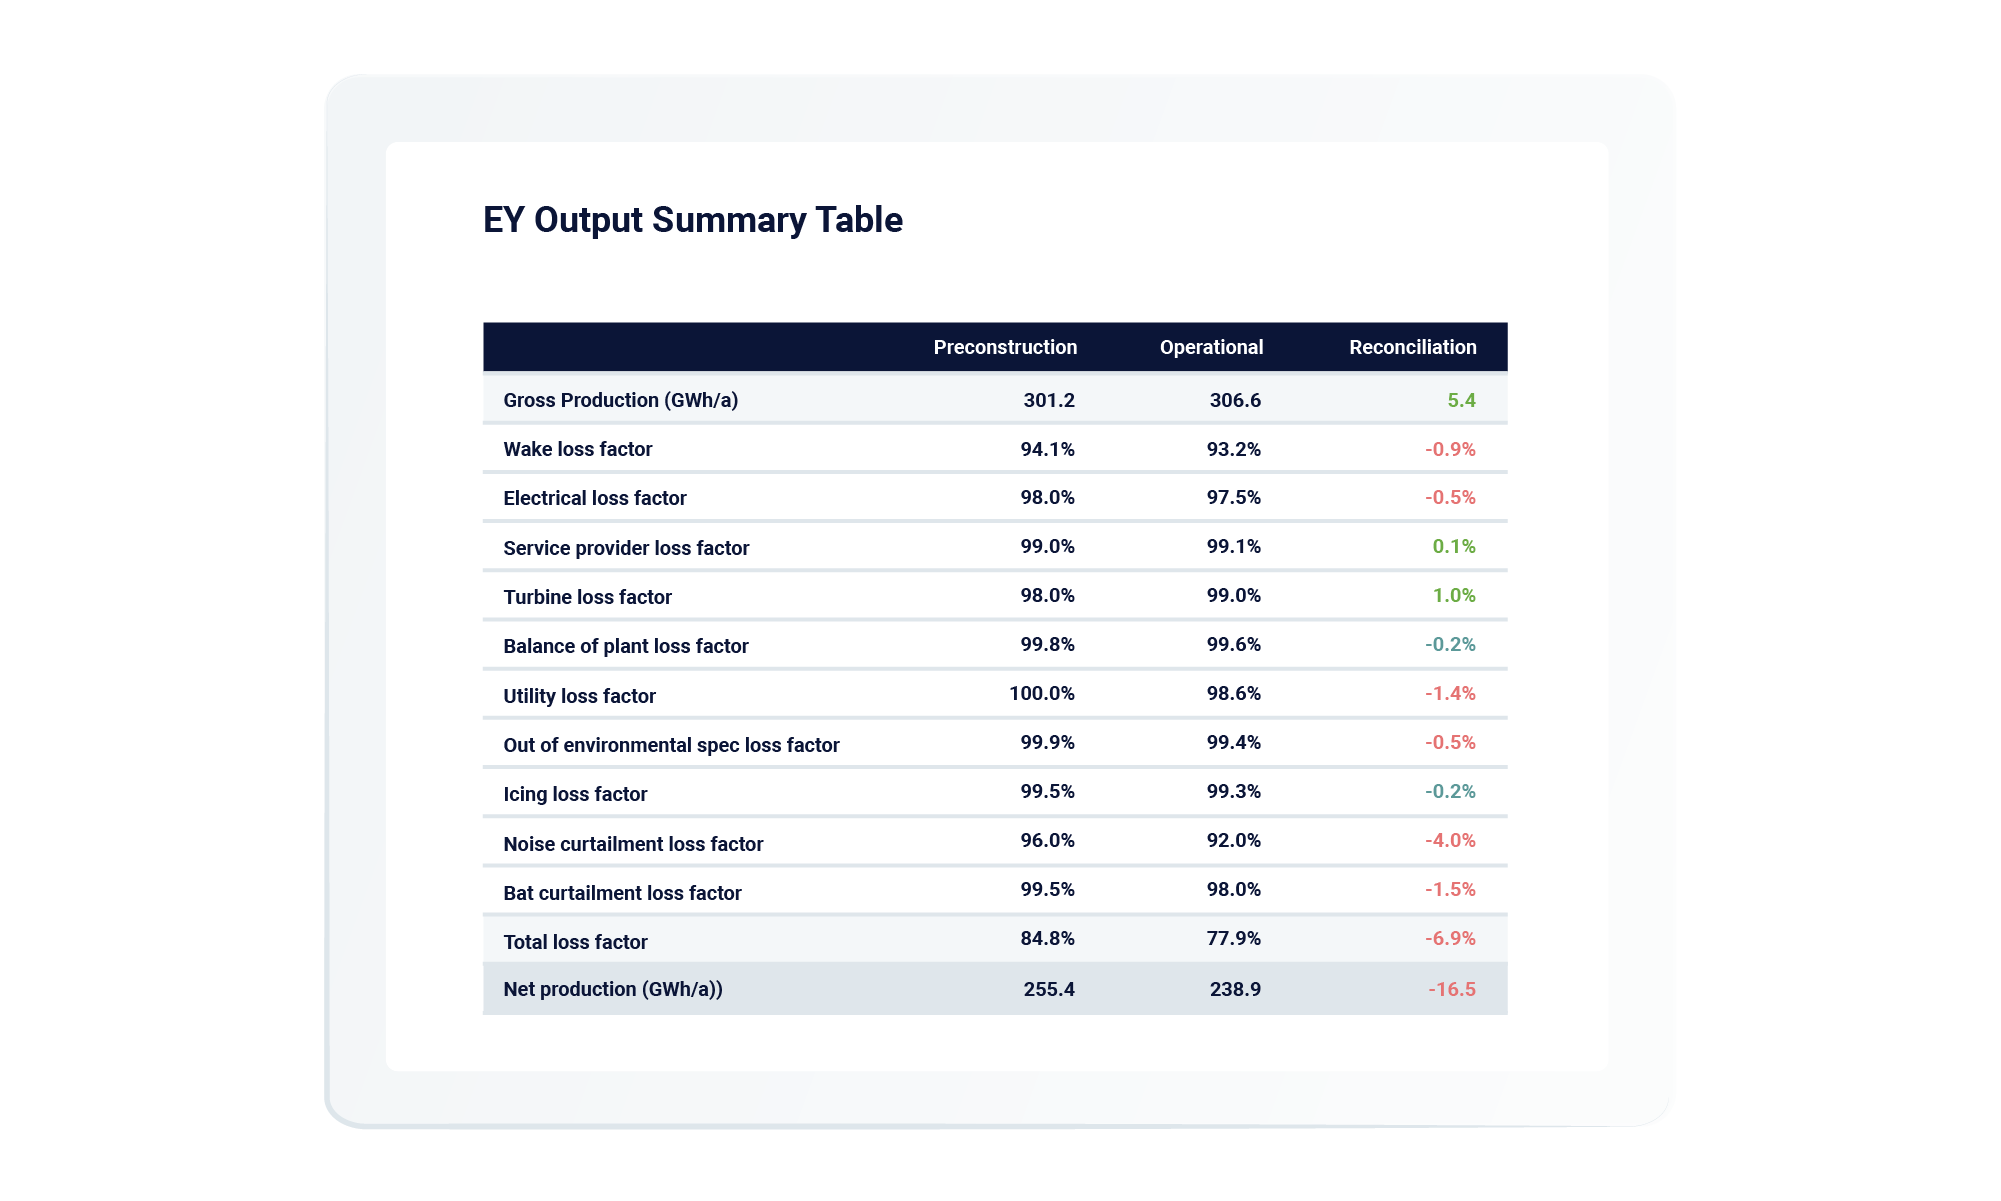 Energy yields output summary table